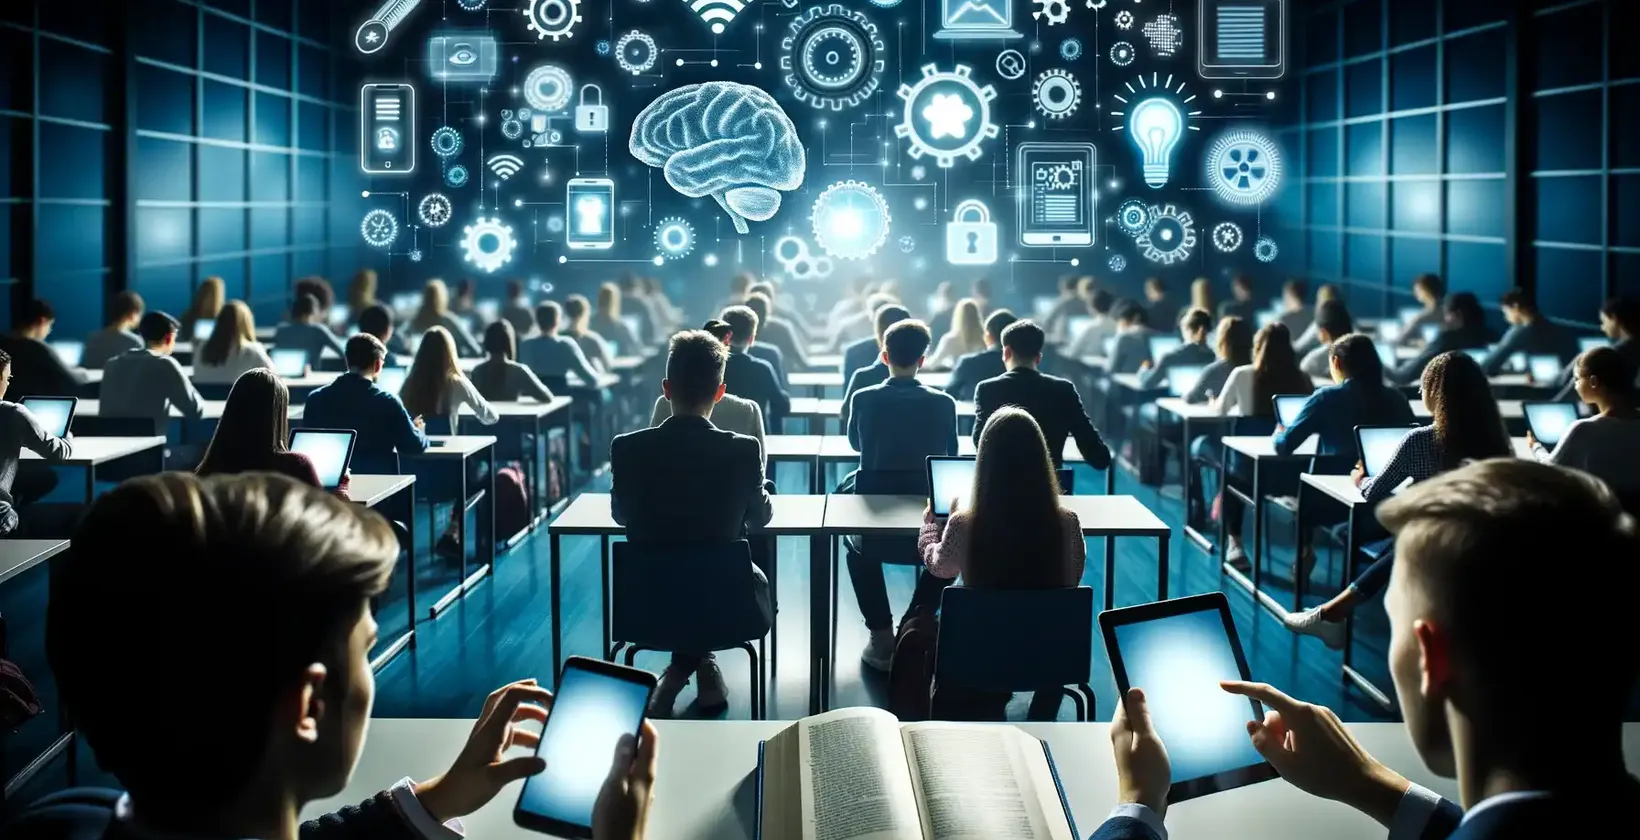 एक भविष्यवादी व्याख्यान कक्ष में छात्रों का एक बड़ा समूह, प्रत्येक लैपटॉप और टैबलेट से लैस है।